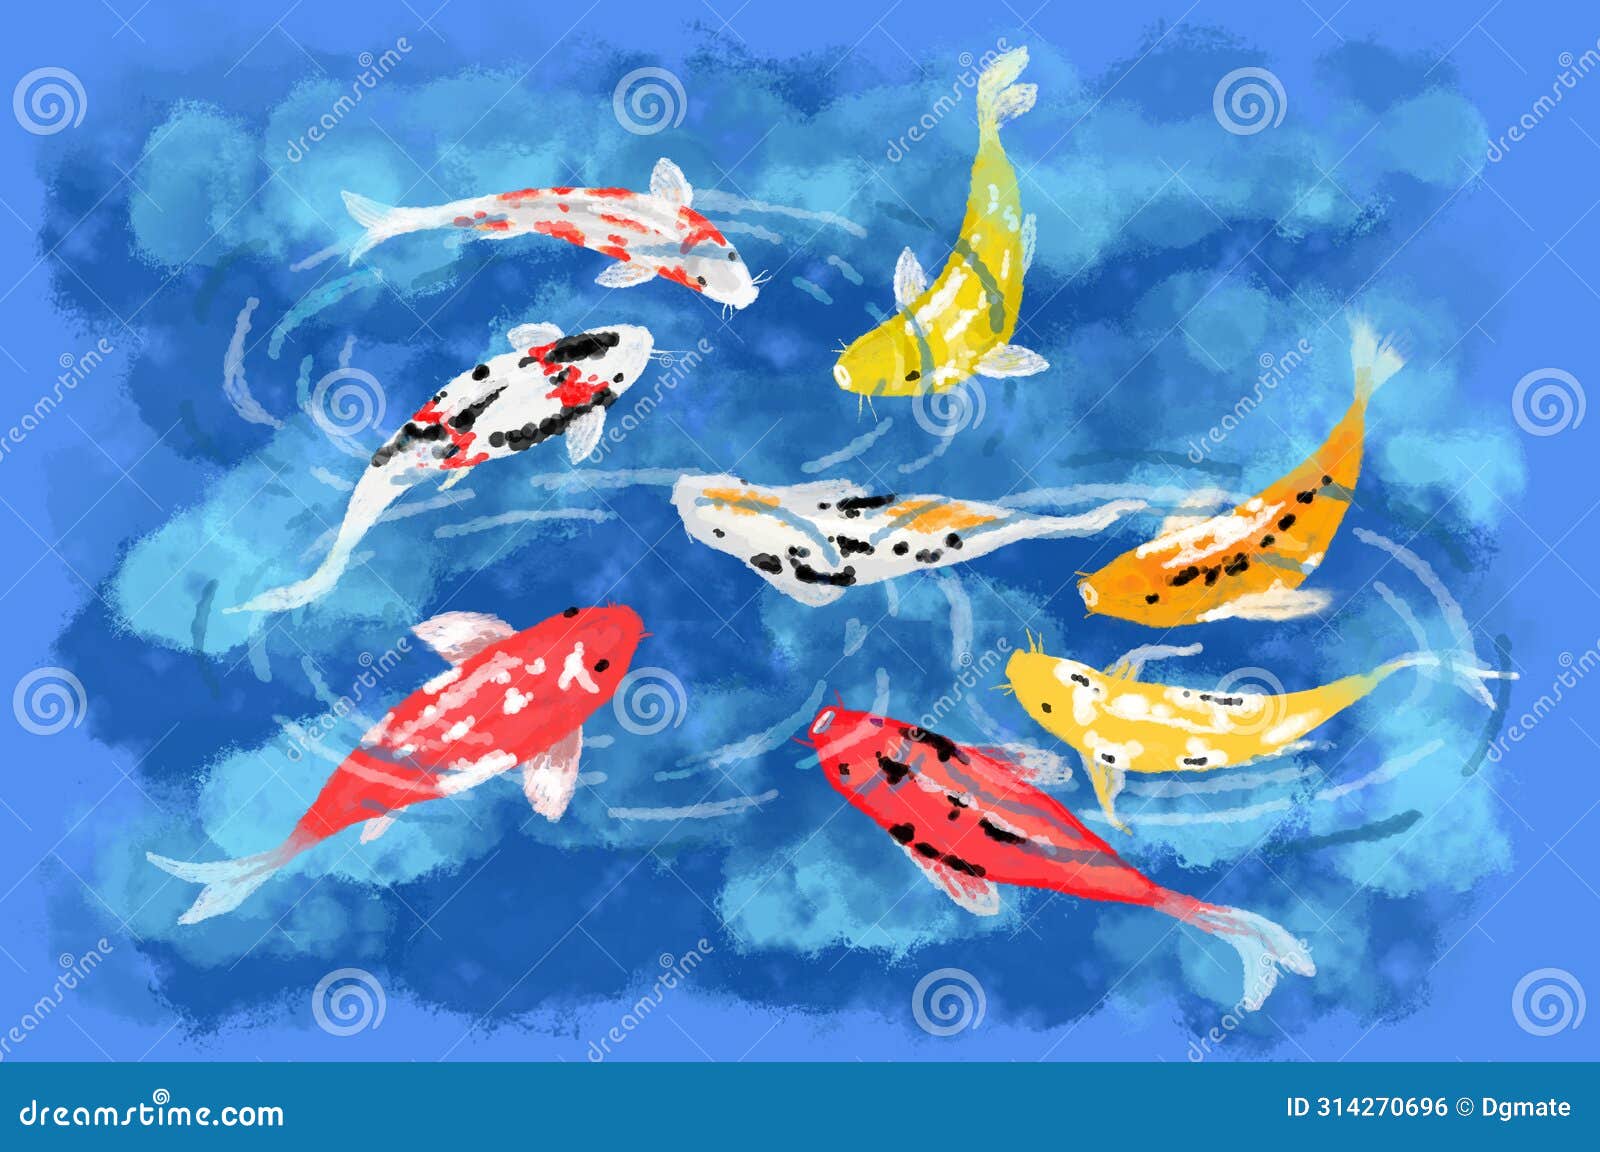 eight koi fish, considered lucky, art